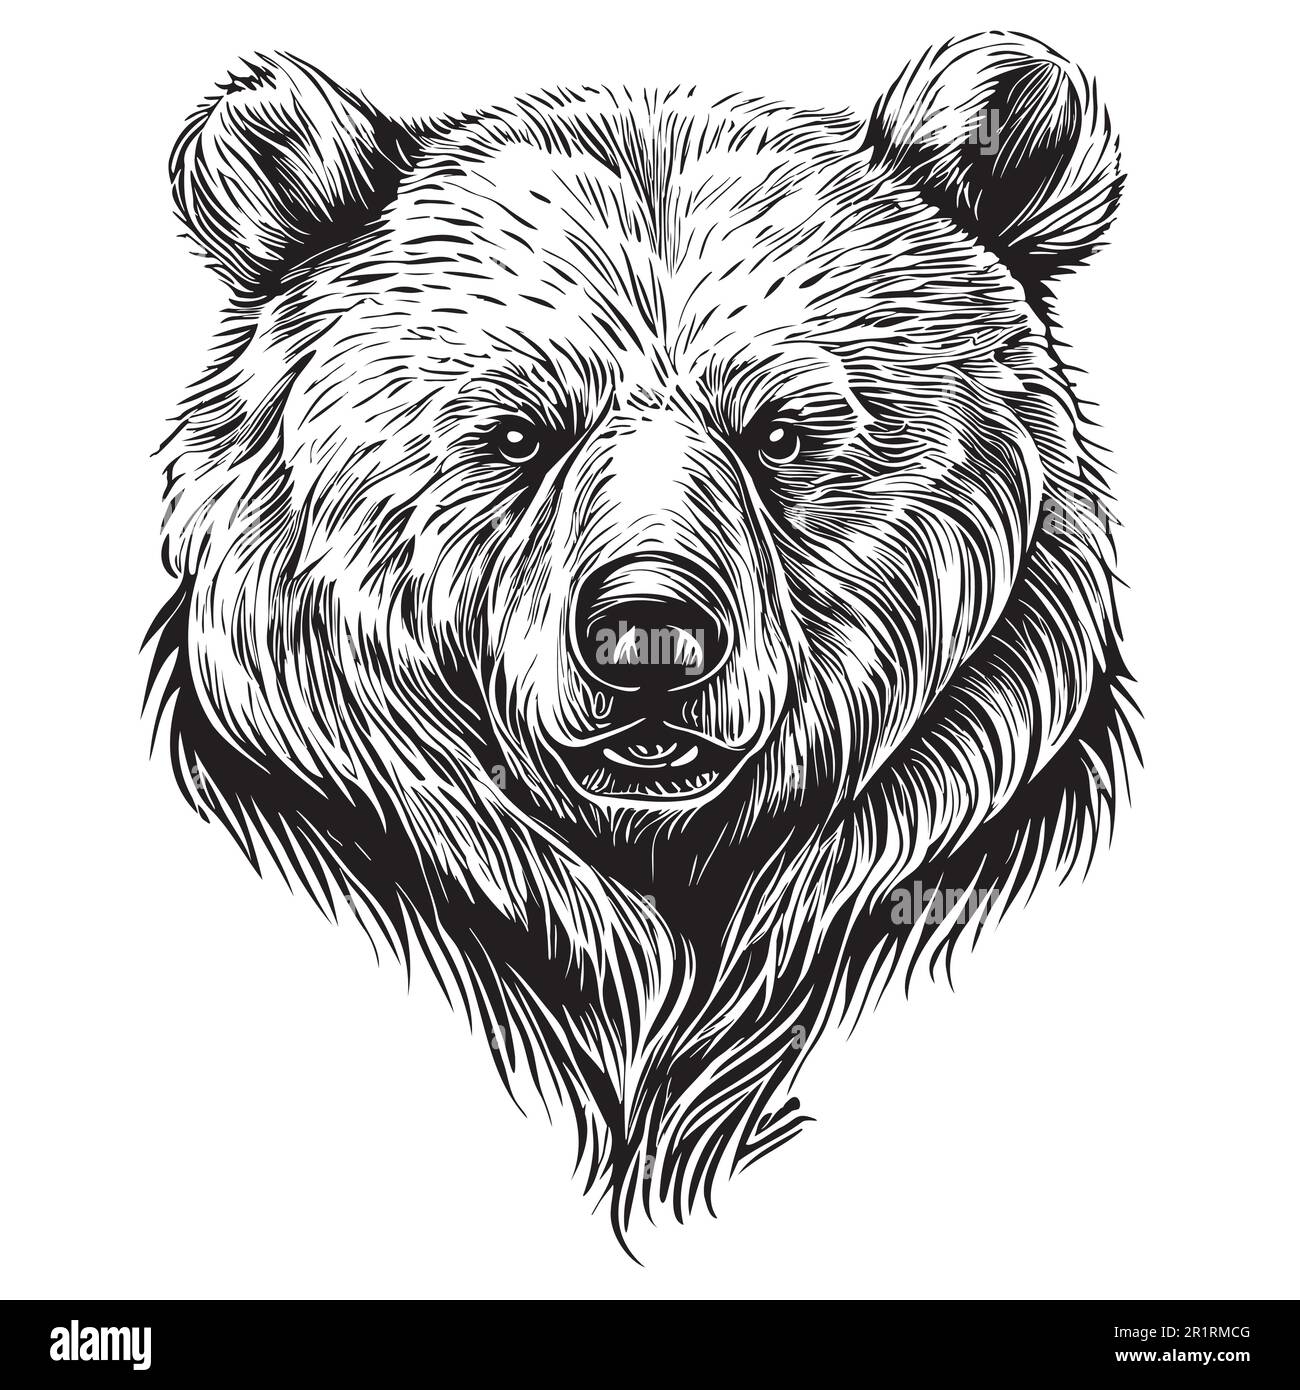 Bärengesicht-Skizze, handgezeichnet in Doodle-Style-Illustration Stock Vektor